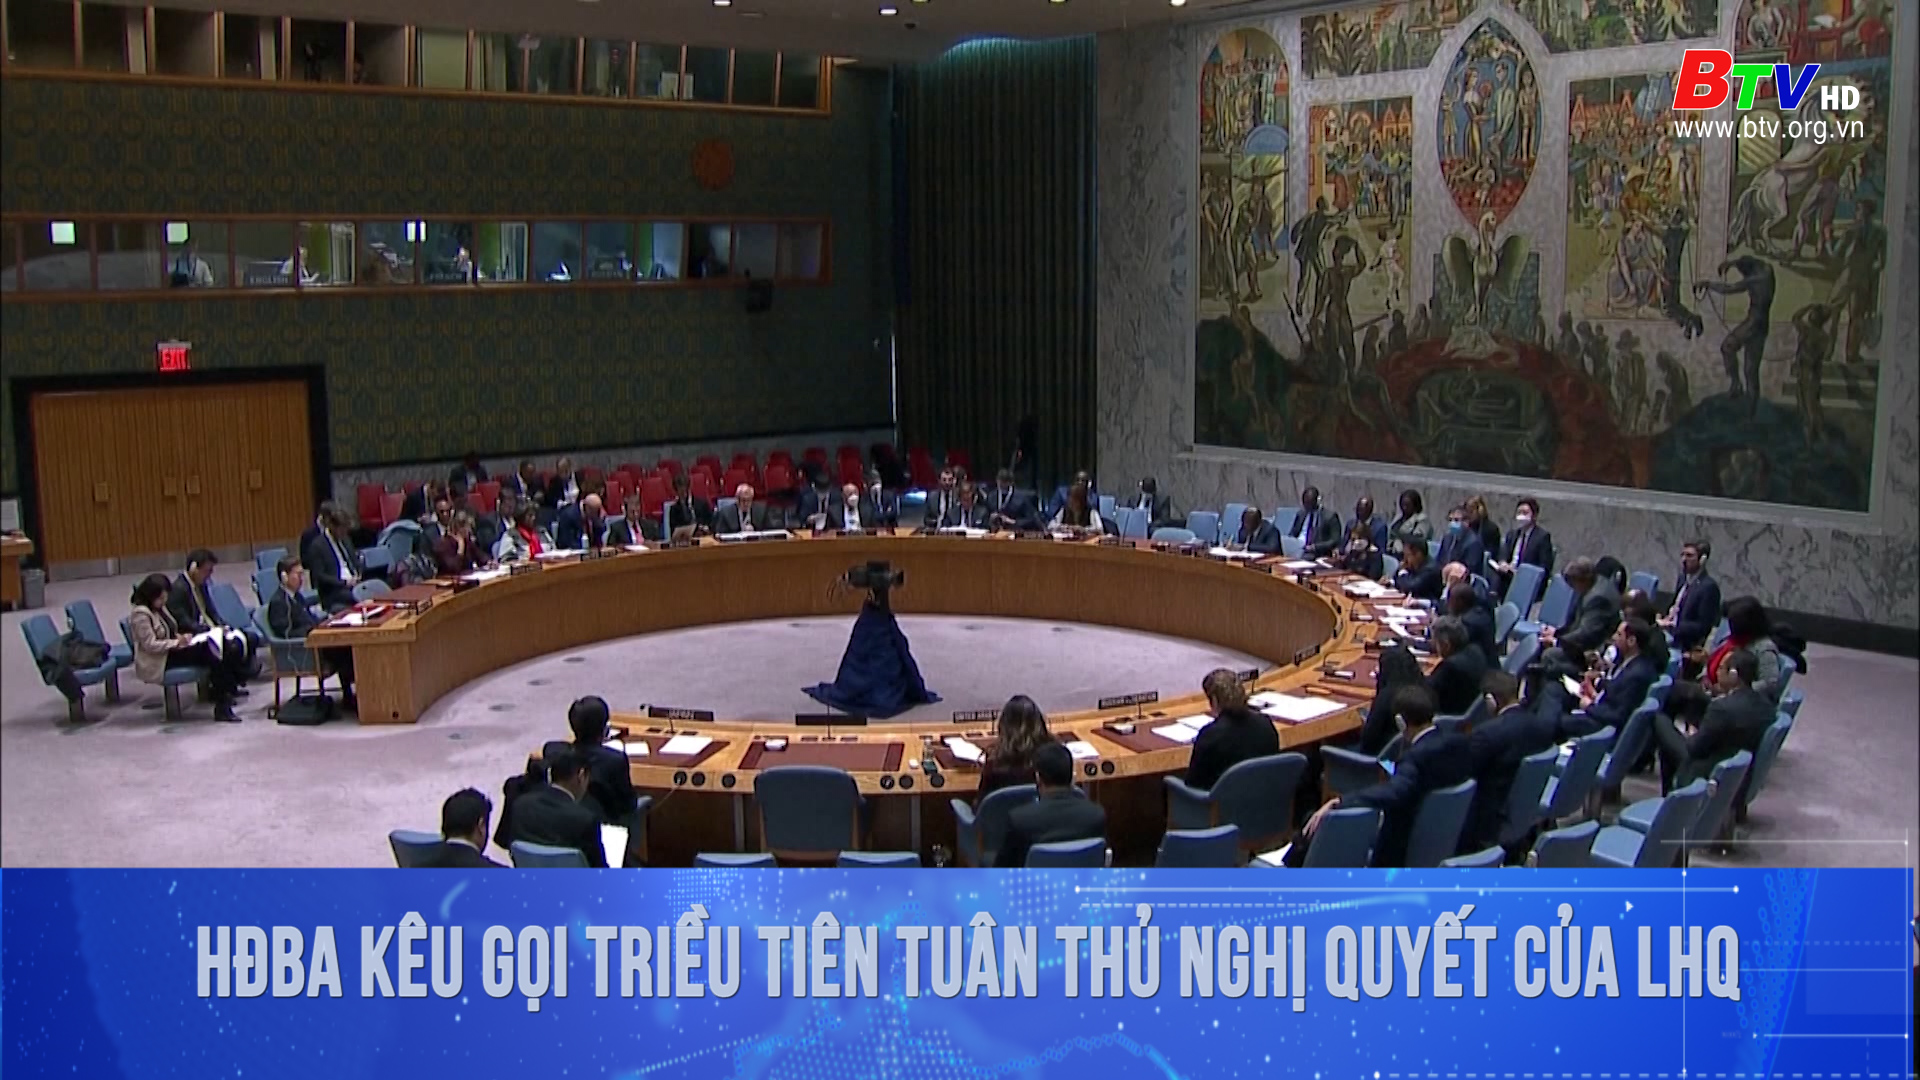 Hội đồng Bảo an kêu gọi Triều Tiên tuân thủ nghị quyết của Liên hợp quốc